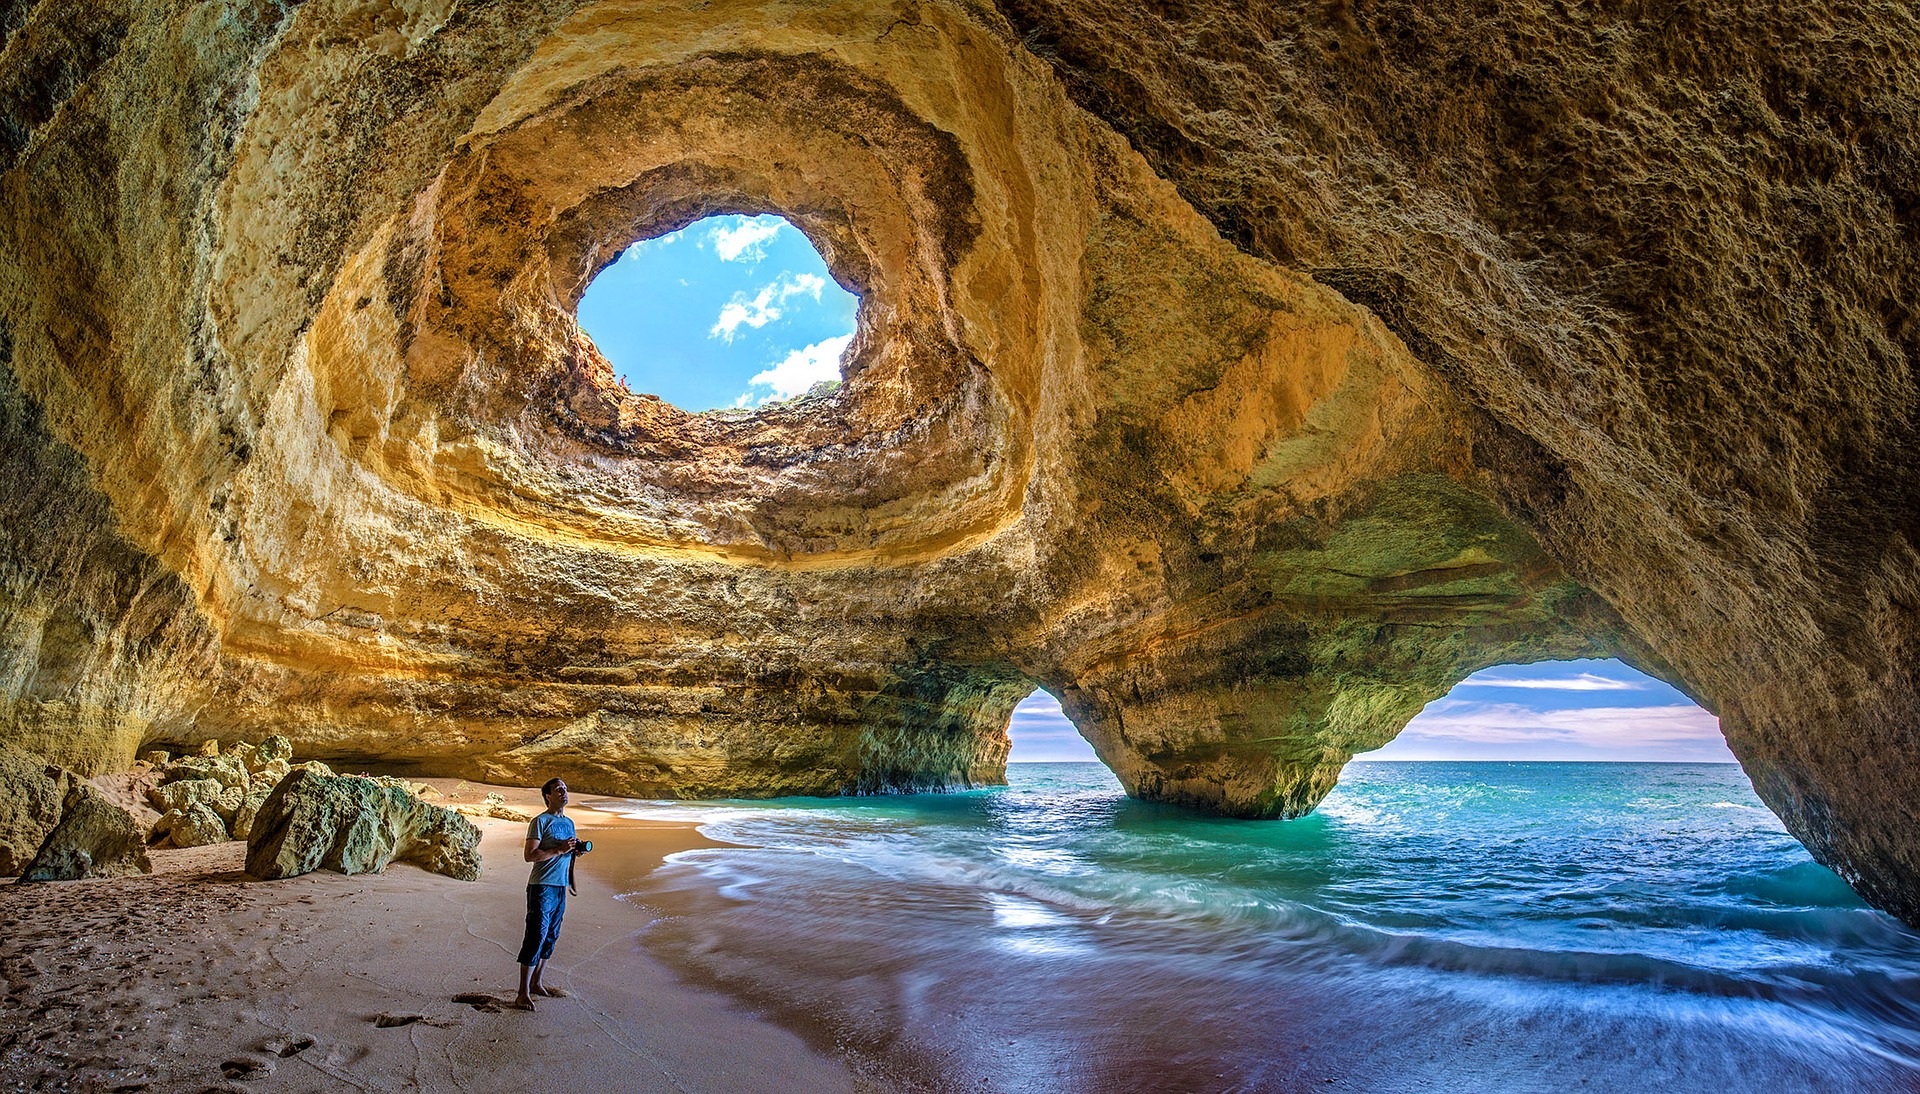 https://pixabay.com/en/portugal-algarve-benagil-caves-3029665/